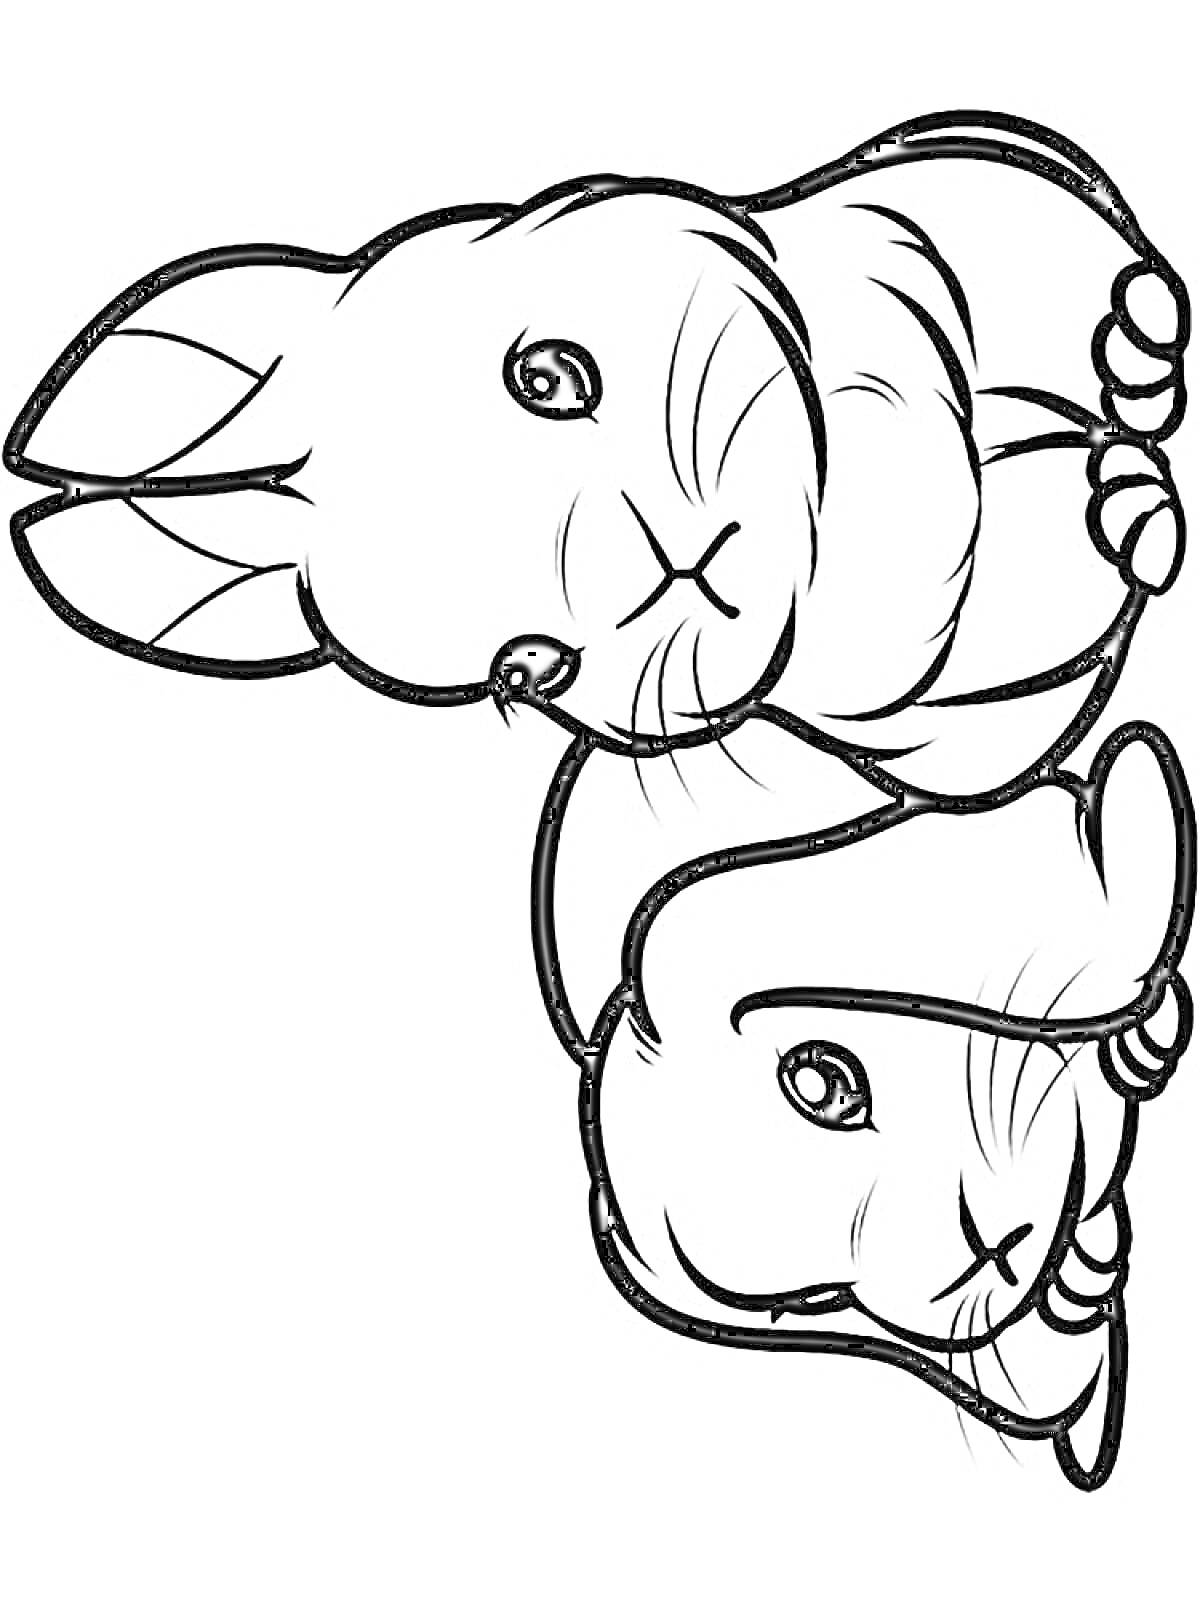 Раскраска Два милых кролика крупным планом